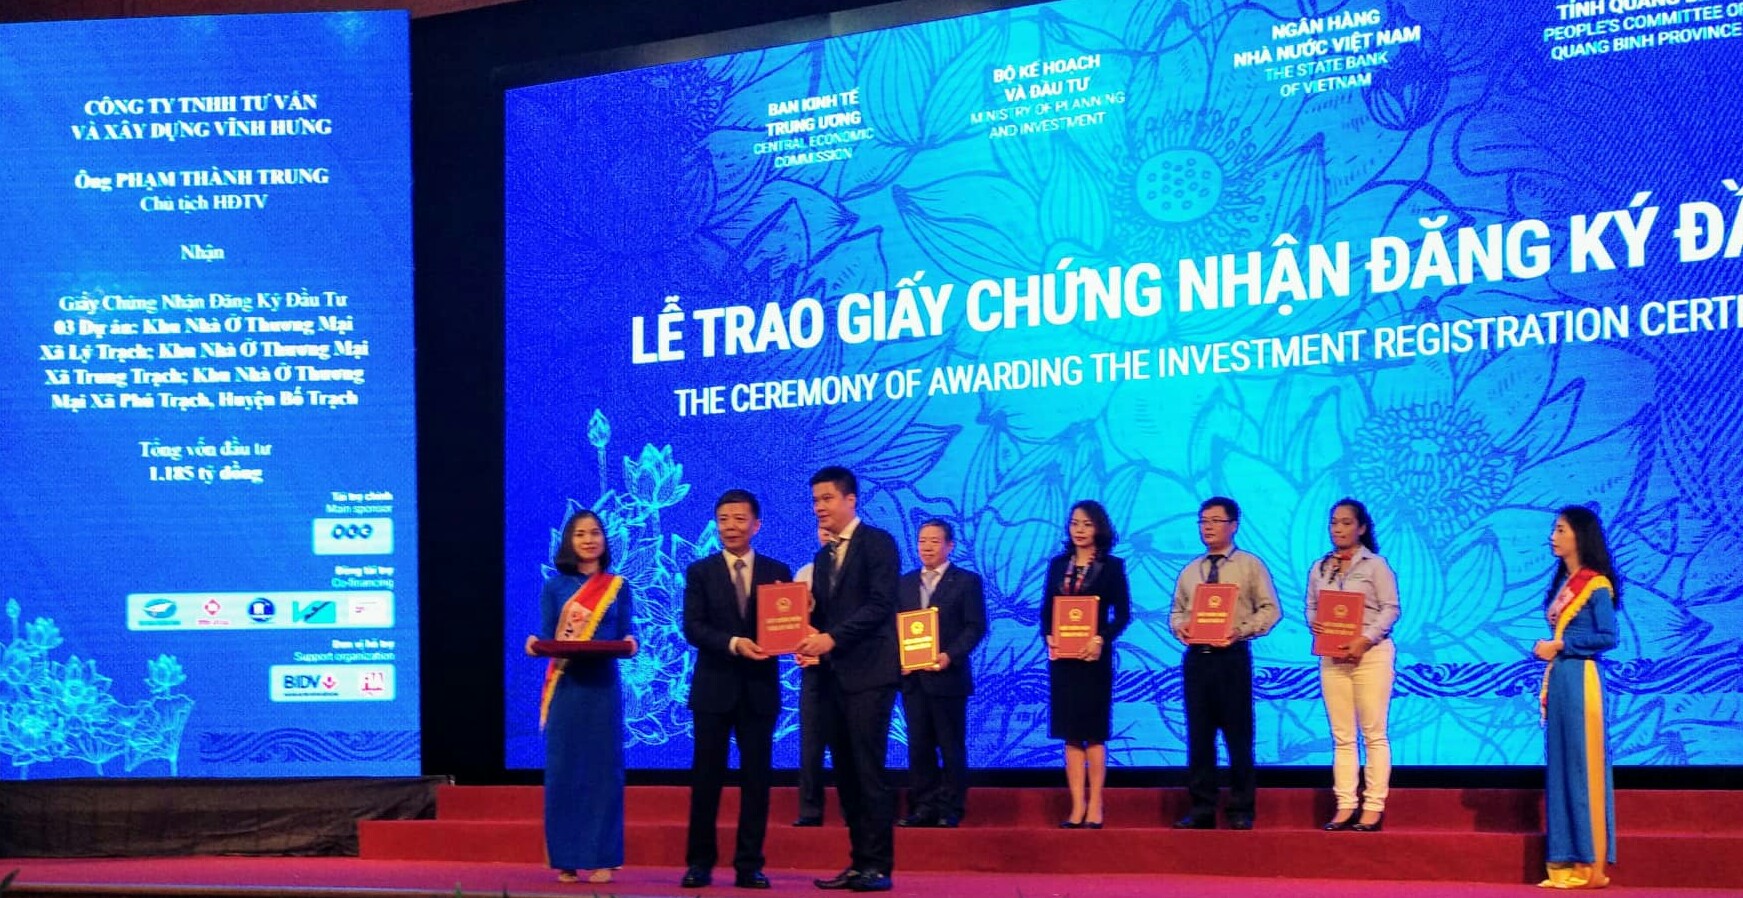 Quảng Bình trao giấy chứng nhận đăng ký đầu tư cho 36 dự án, tổng vốn đầu tư gần 30.000 tỷ đồng